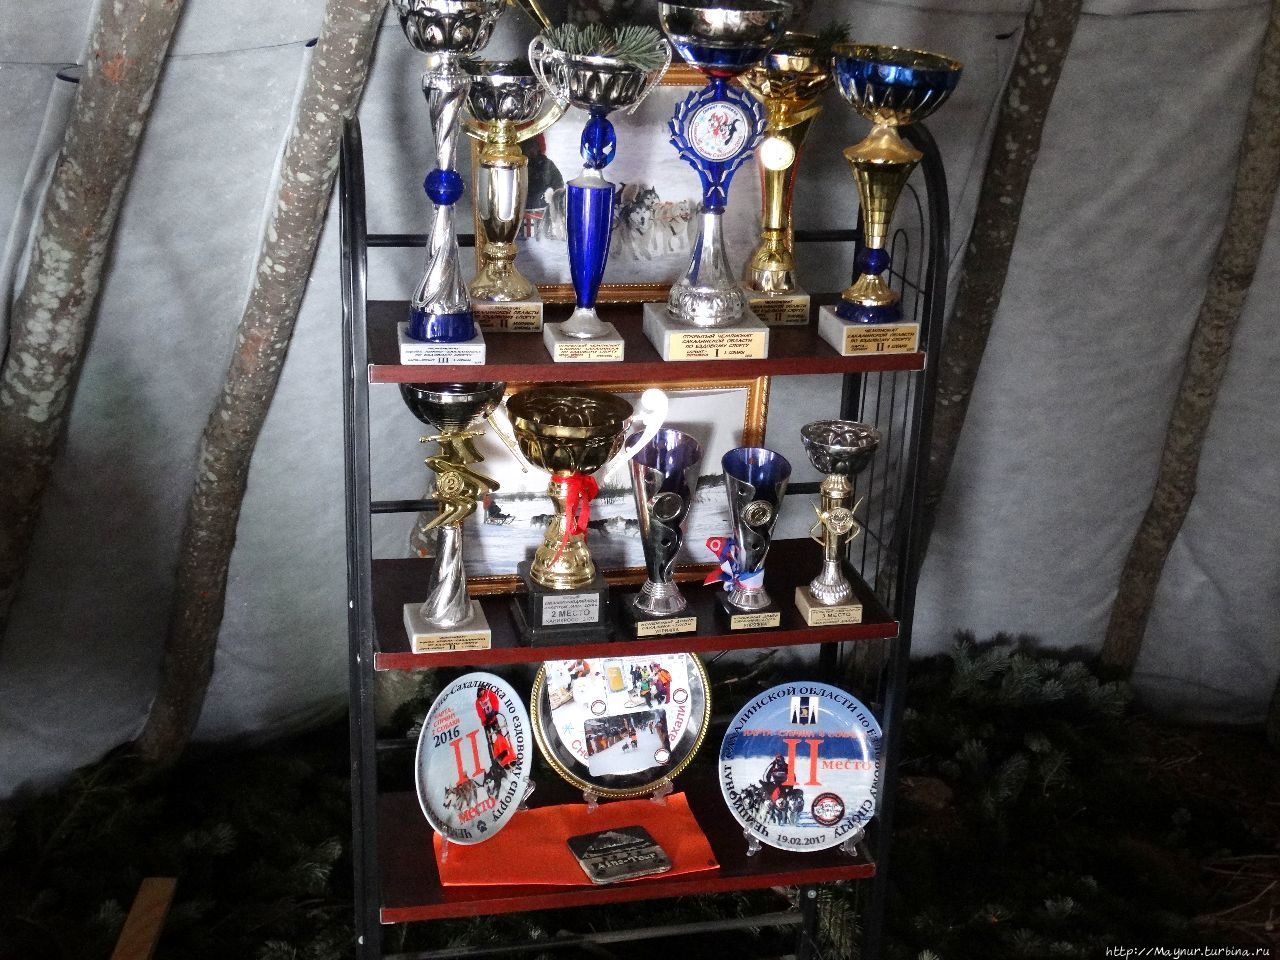 Спортивные трофеи. Два раза в год на Сахалине проводятся соревнования ездовых собак — летом и зимой. Южно-Сахалинск, Россия